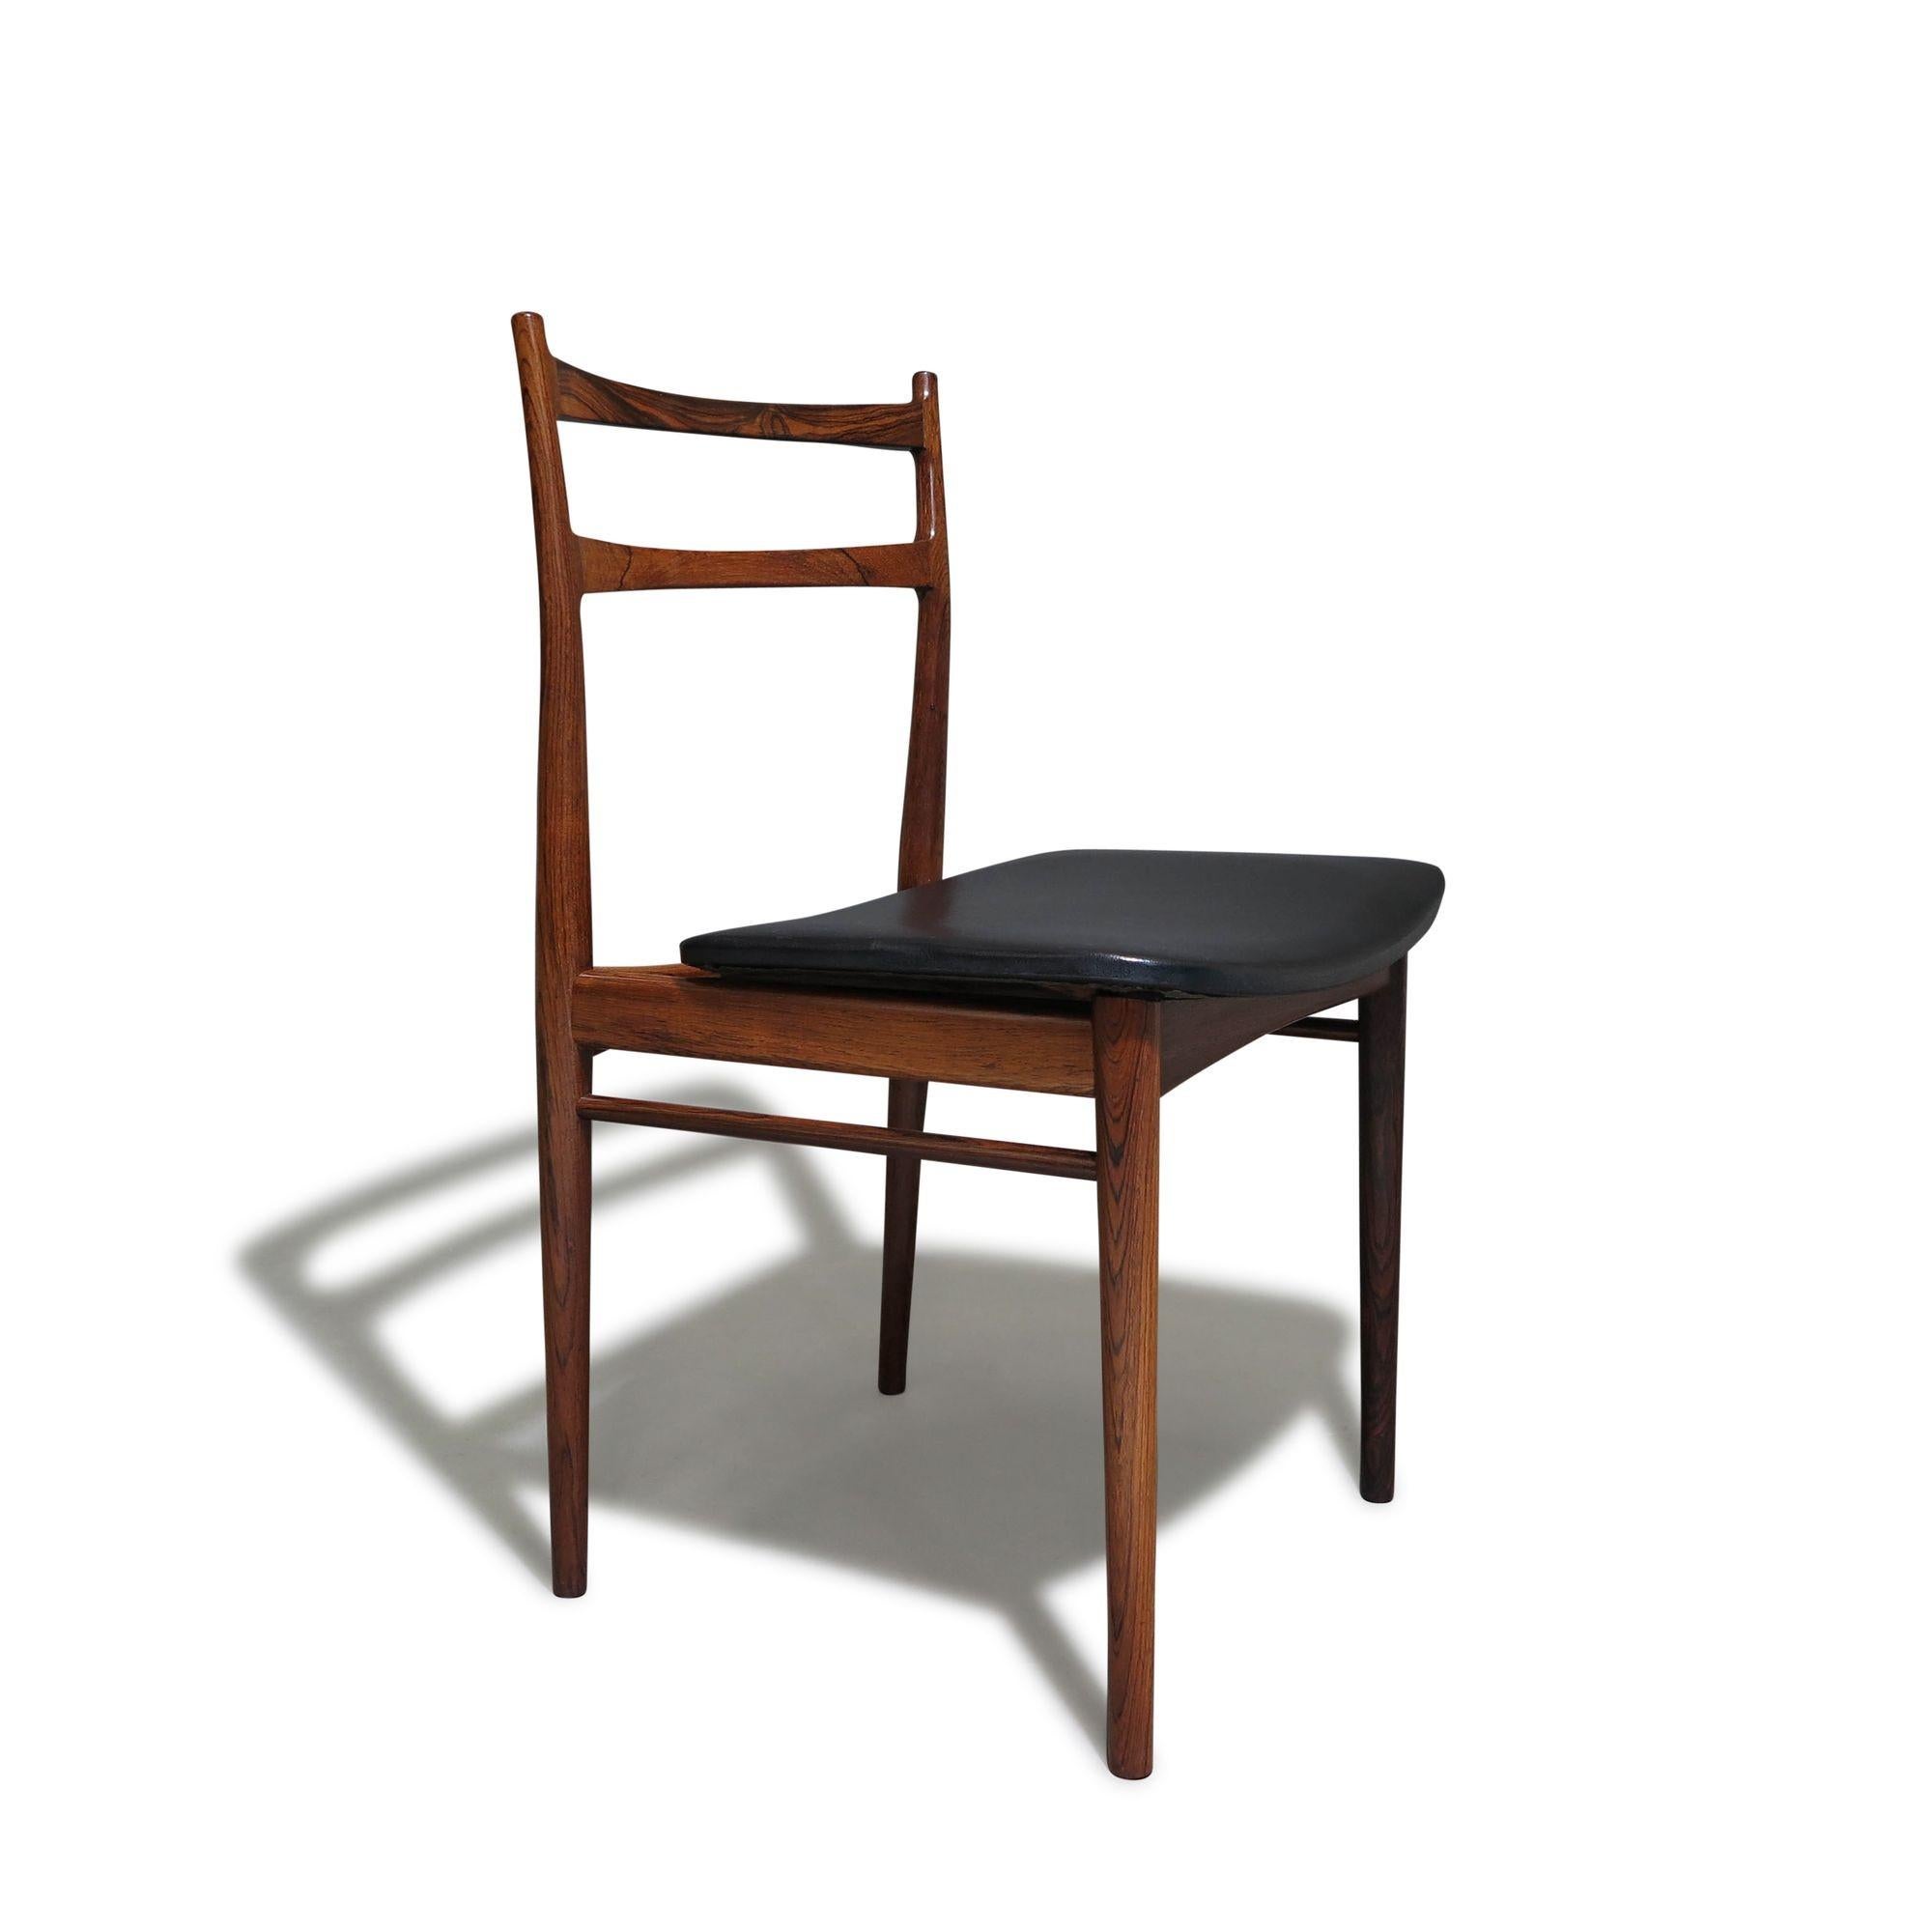 Minimalistische und klassische Form der Esszimmerstühle, entworfen von Henry Rosengren Hansen für Brande Mobelindustri, Dänemark, 1958. Das elegante Set aus sechs Stühlen besteht aus einem Gestell aus massivem brasilianischem Palisanderholz, das